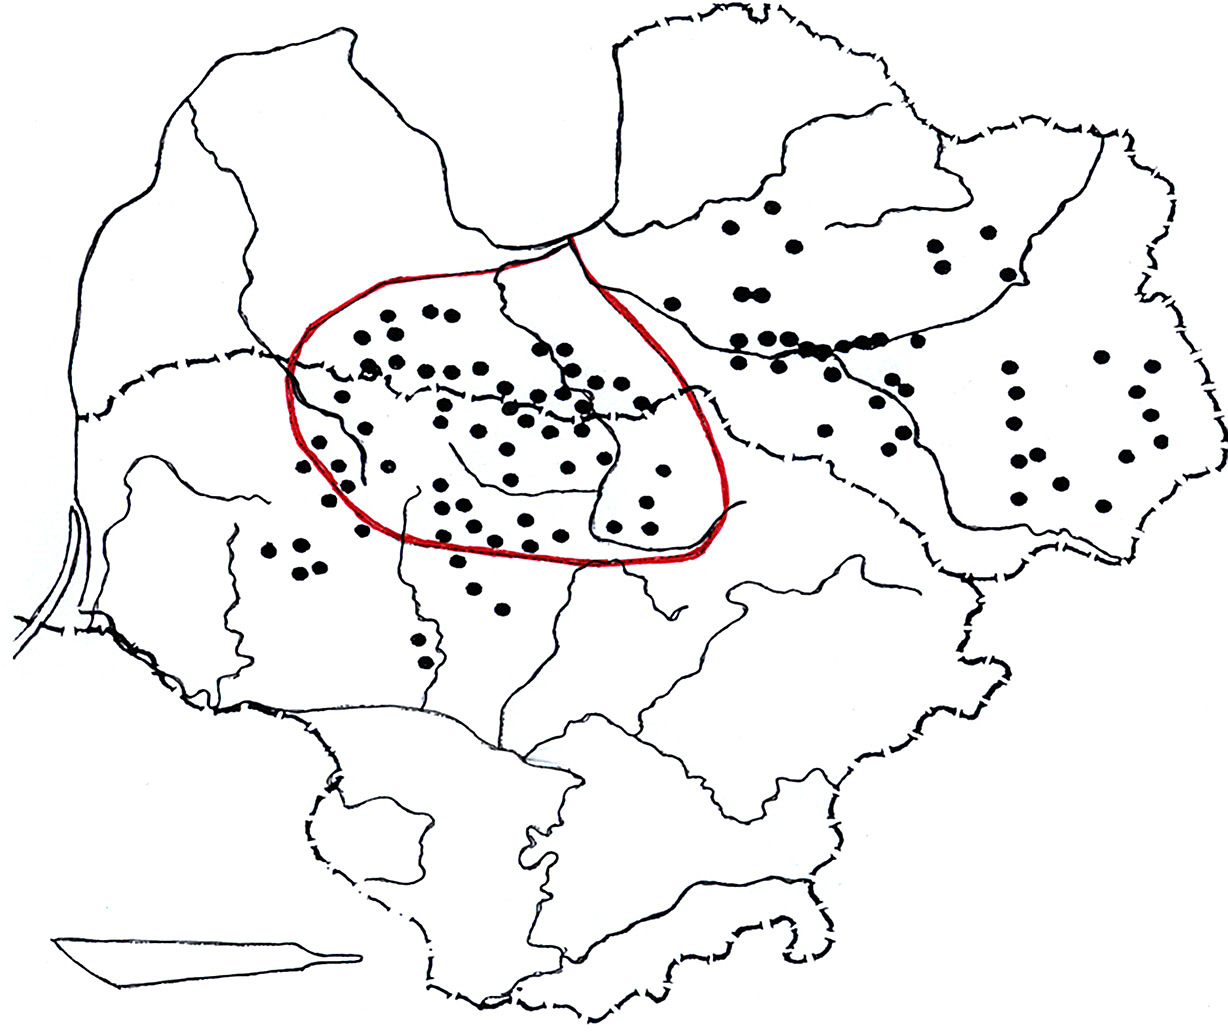 10 pav. Plačiųjų kovos peilių-kalavijų paplitimo žemėlapis remiantis V. Kazakevičiumi